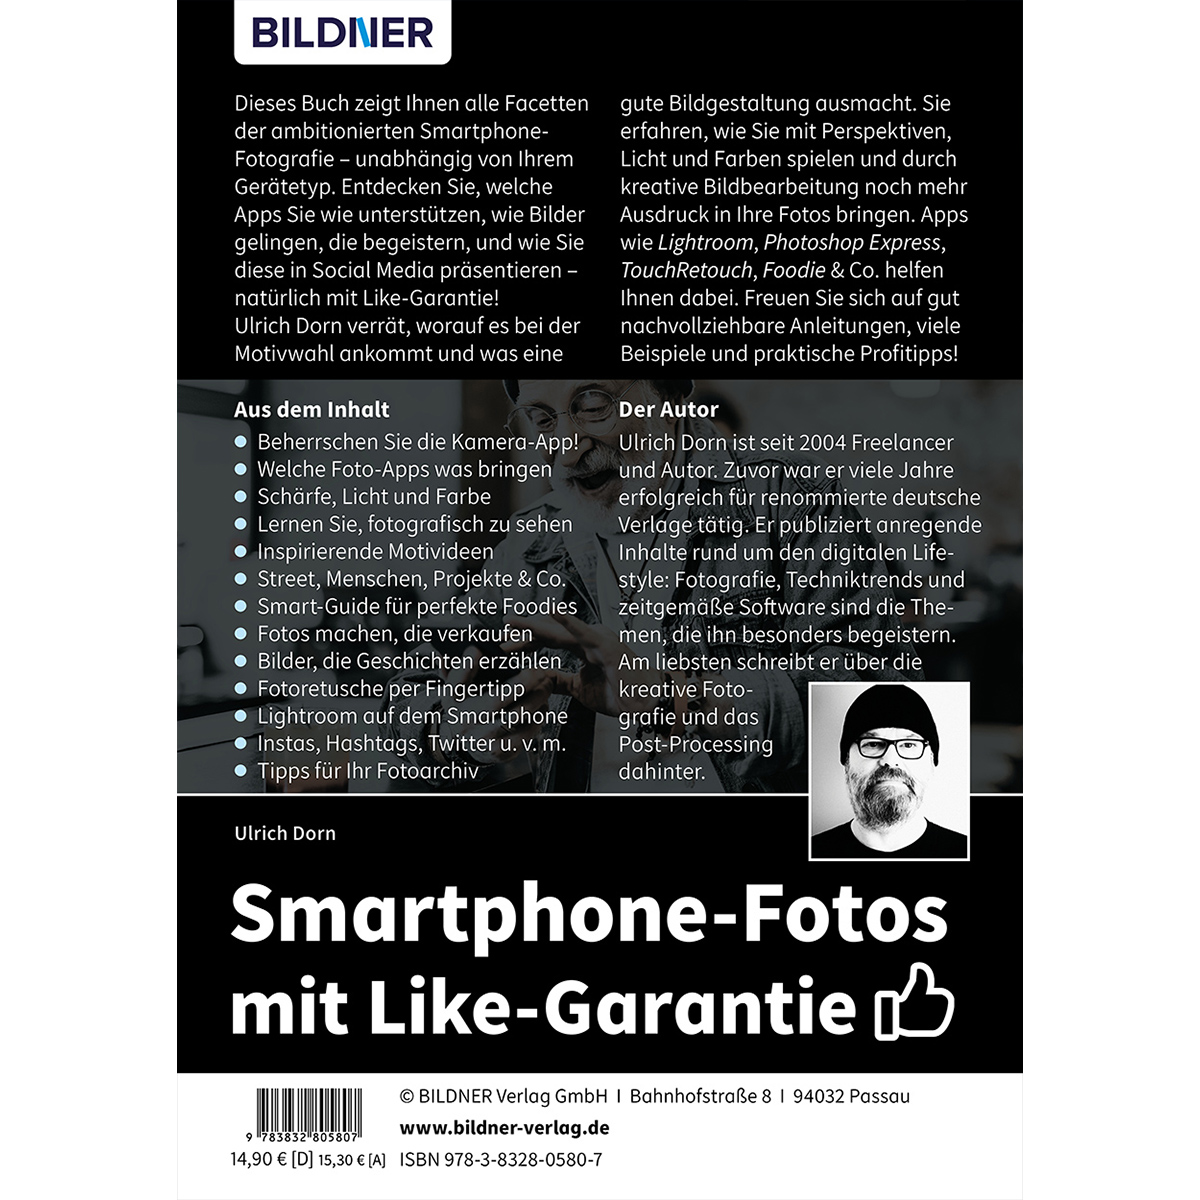 Smartphone-Fotos mit Like-Garantie Auflage: - Mehr neue Topaktuelle Tipps, Apps